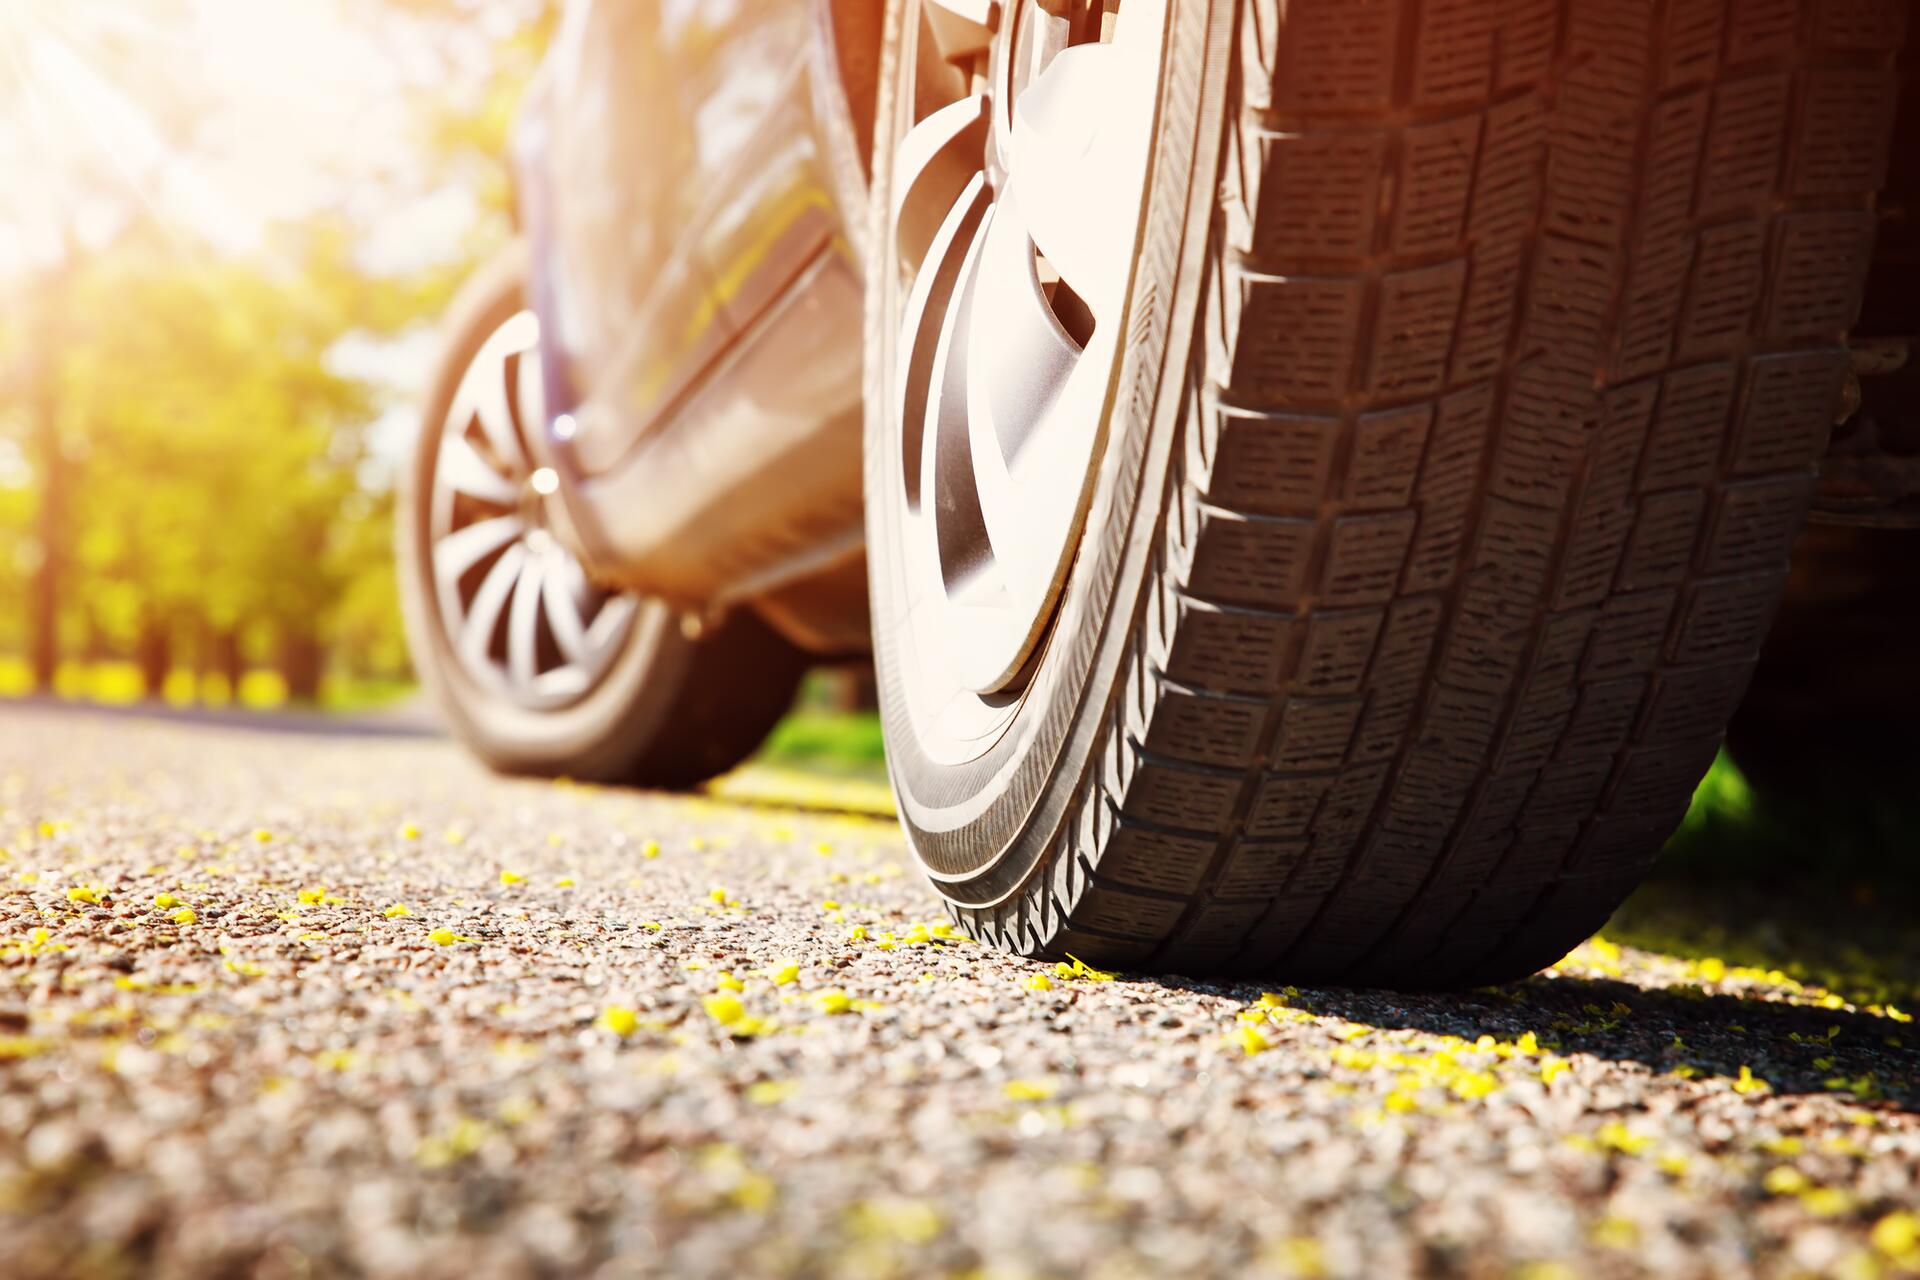 Valivý odpor pneu: Jak ovlivňuje spotřebu?